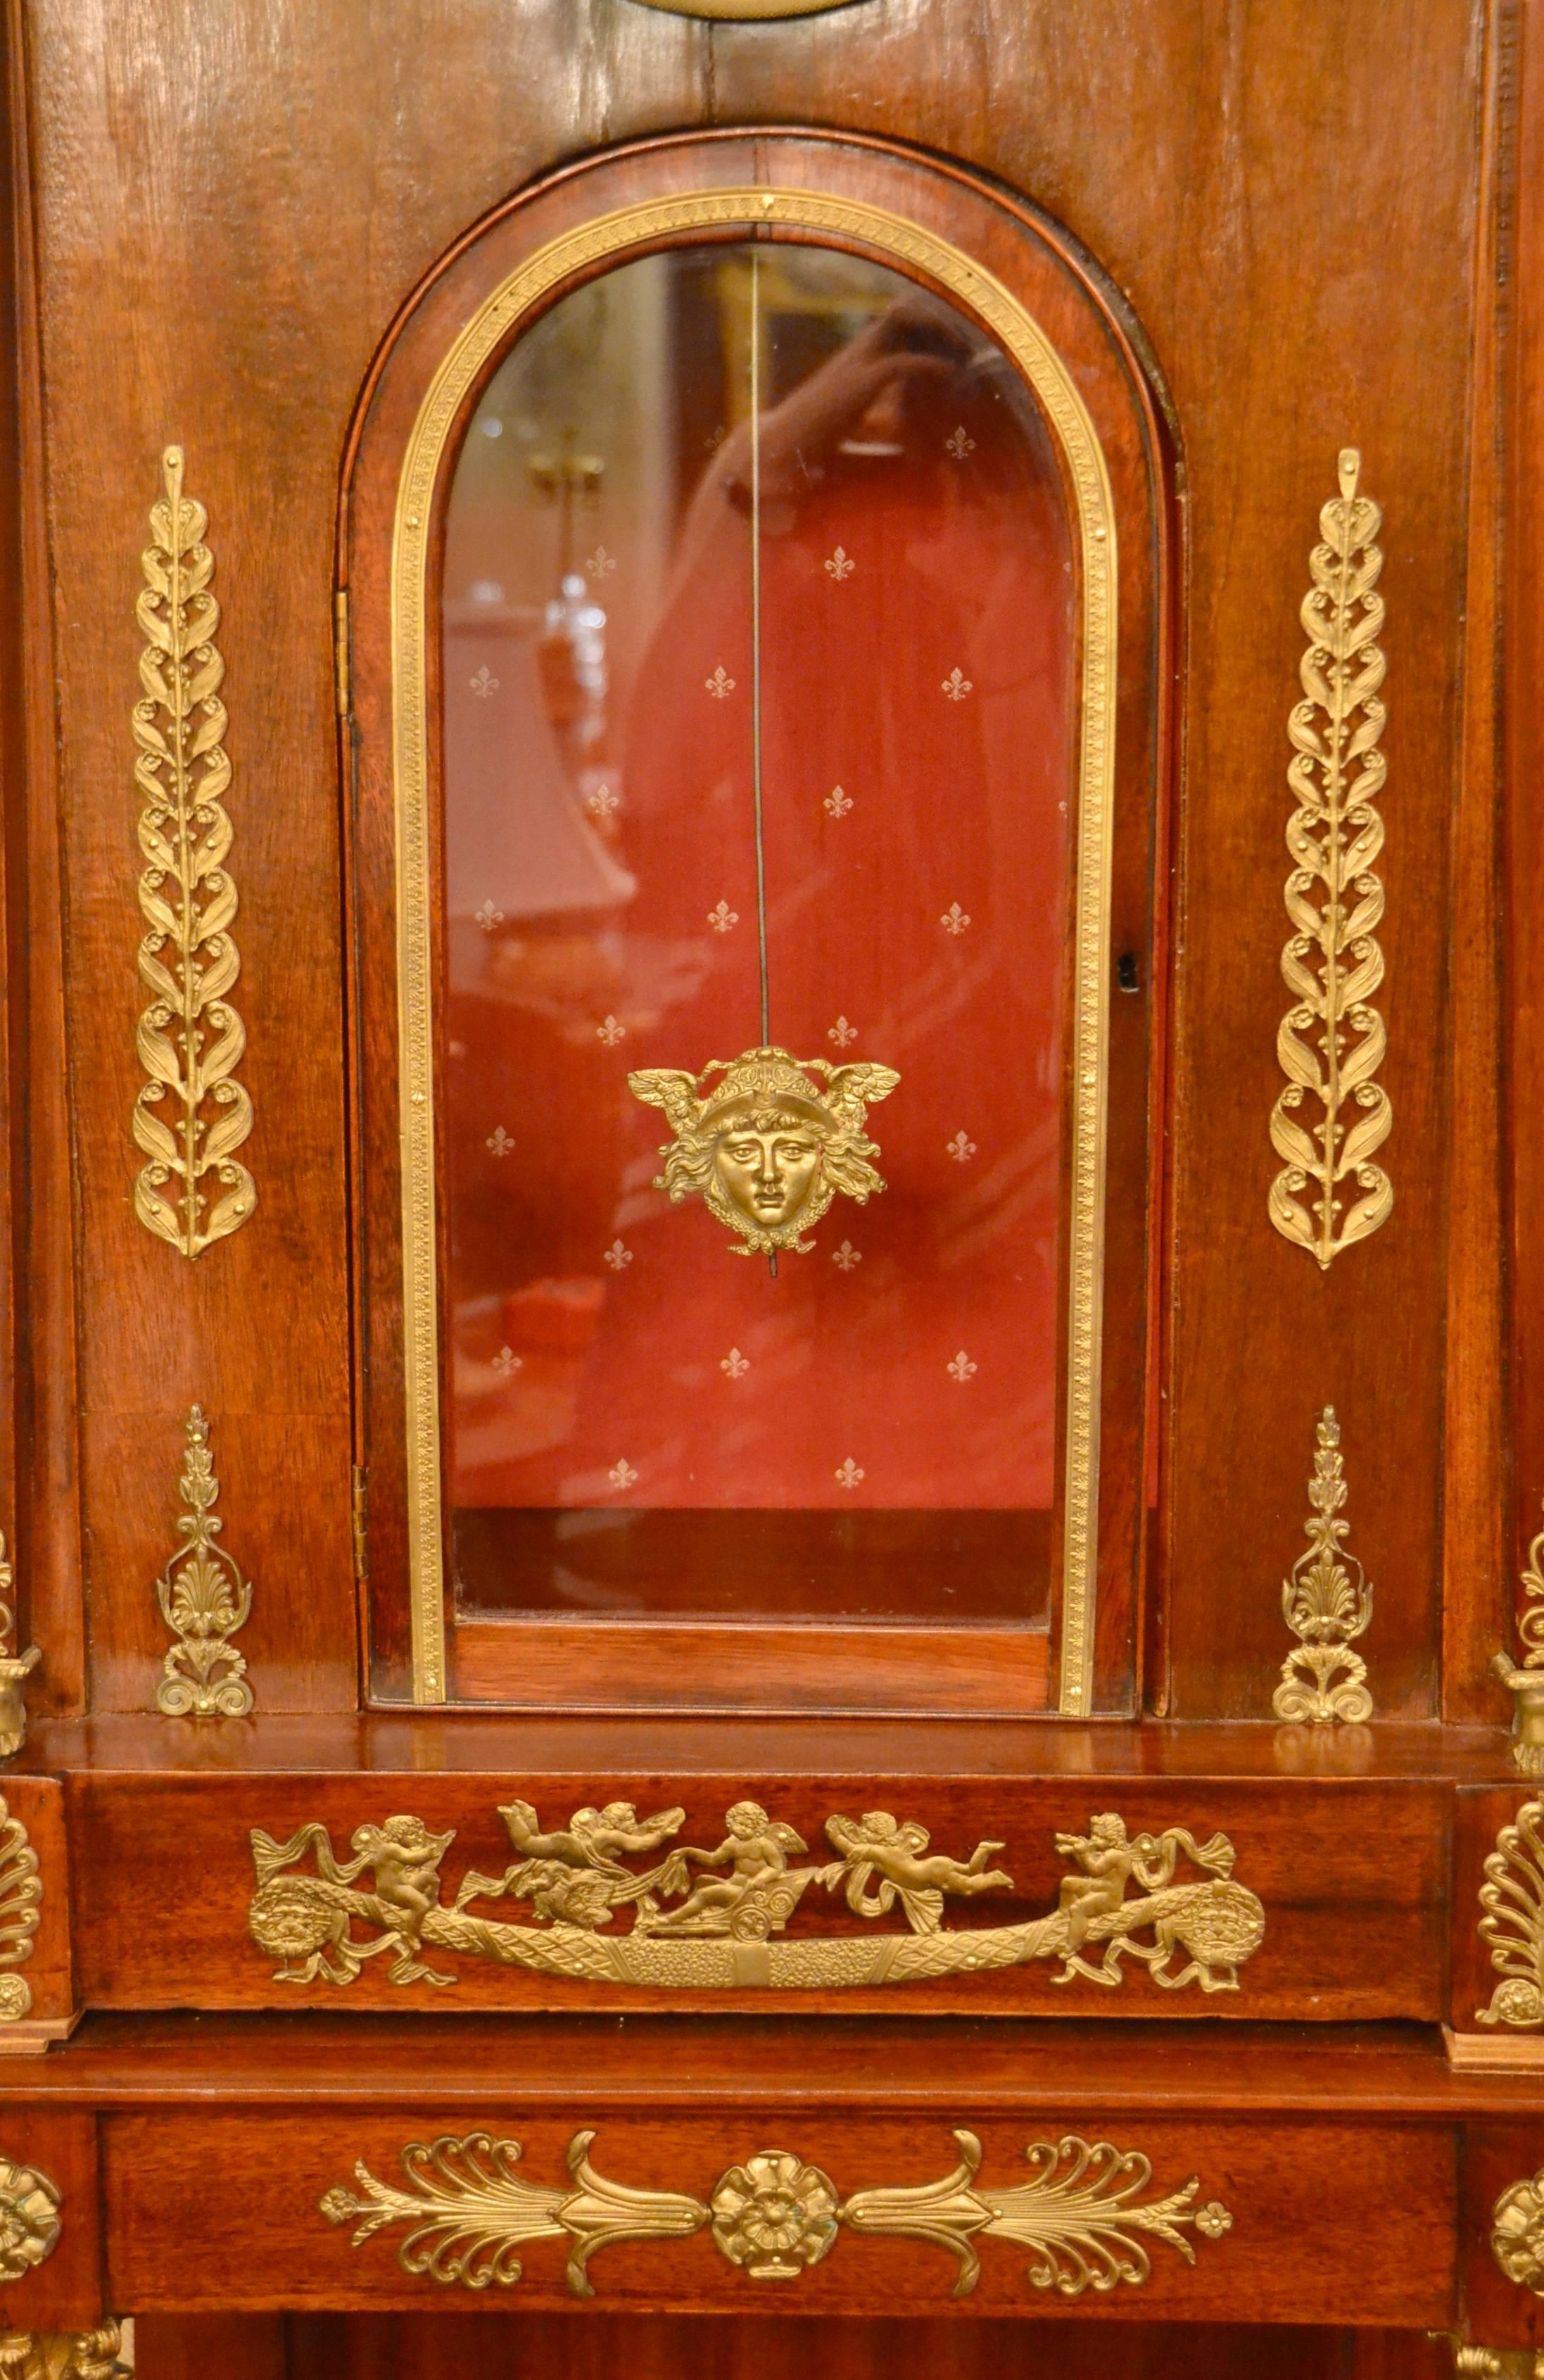 Antique 19th century Empire mahogany tall case clock.